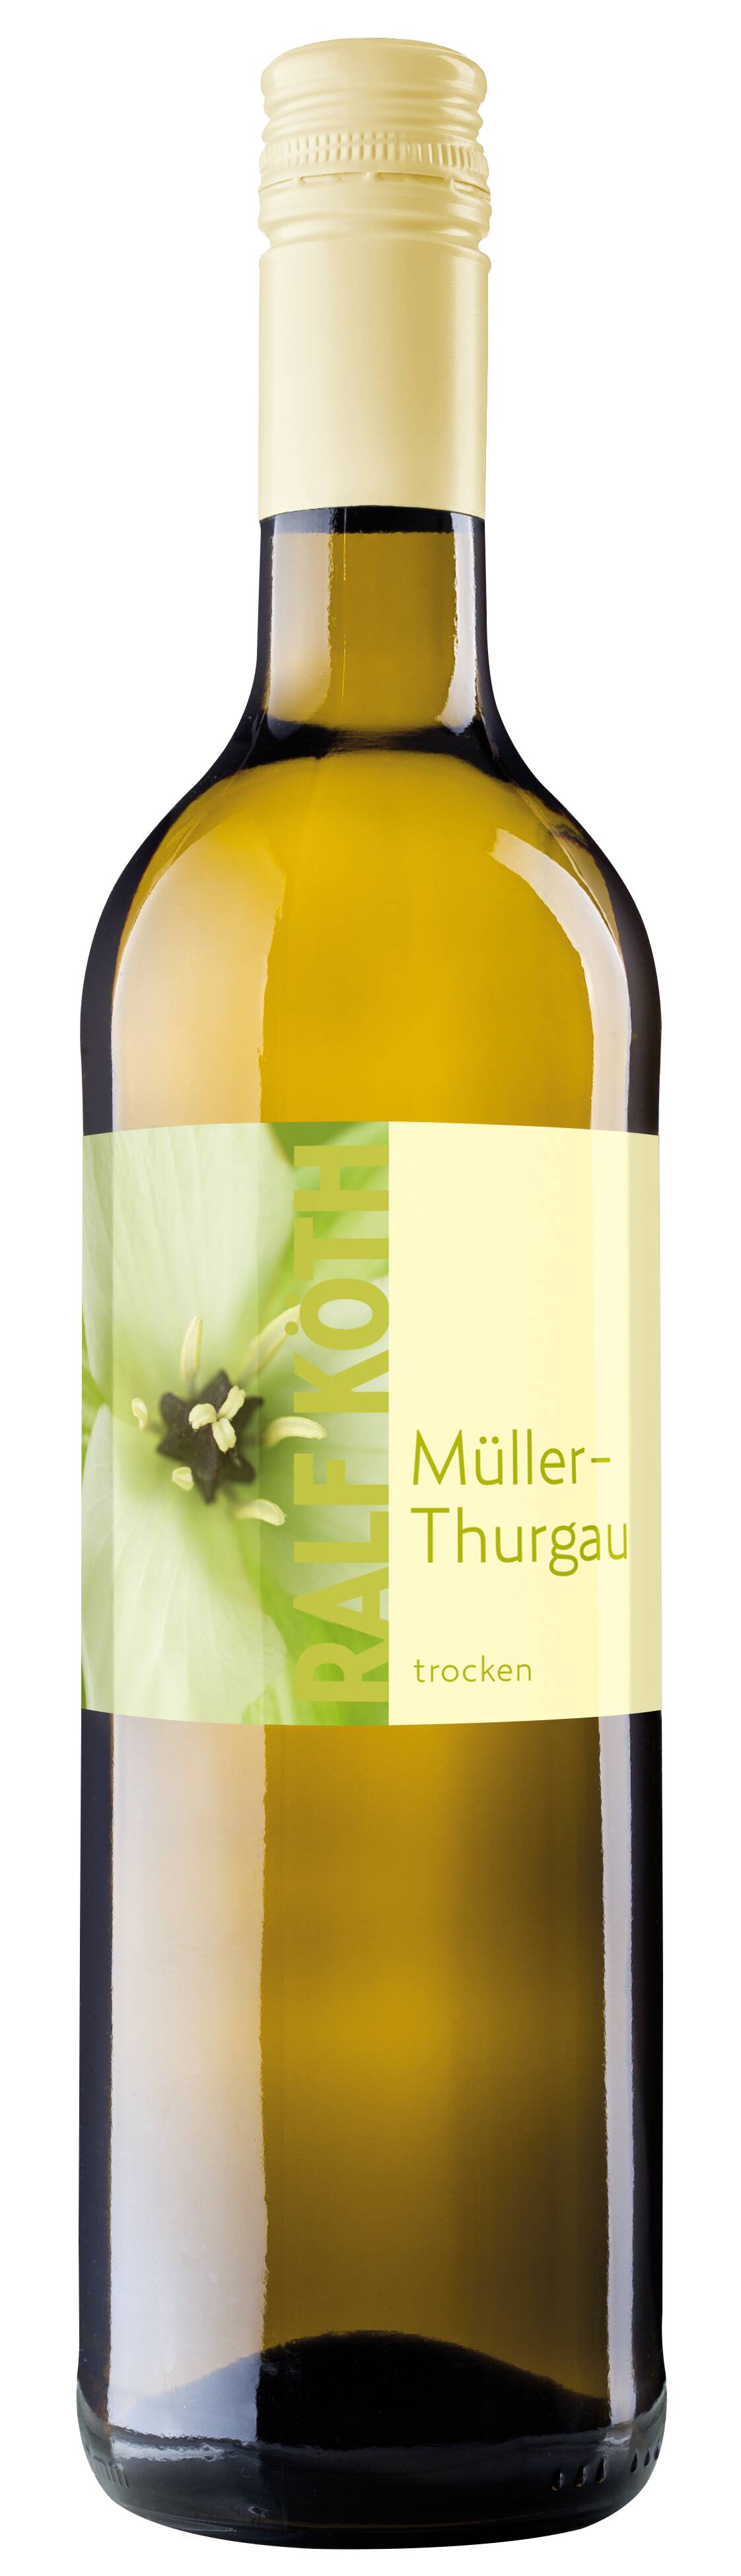 Müller Thurgau